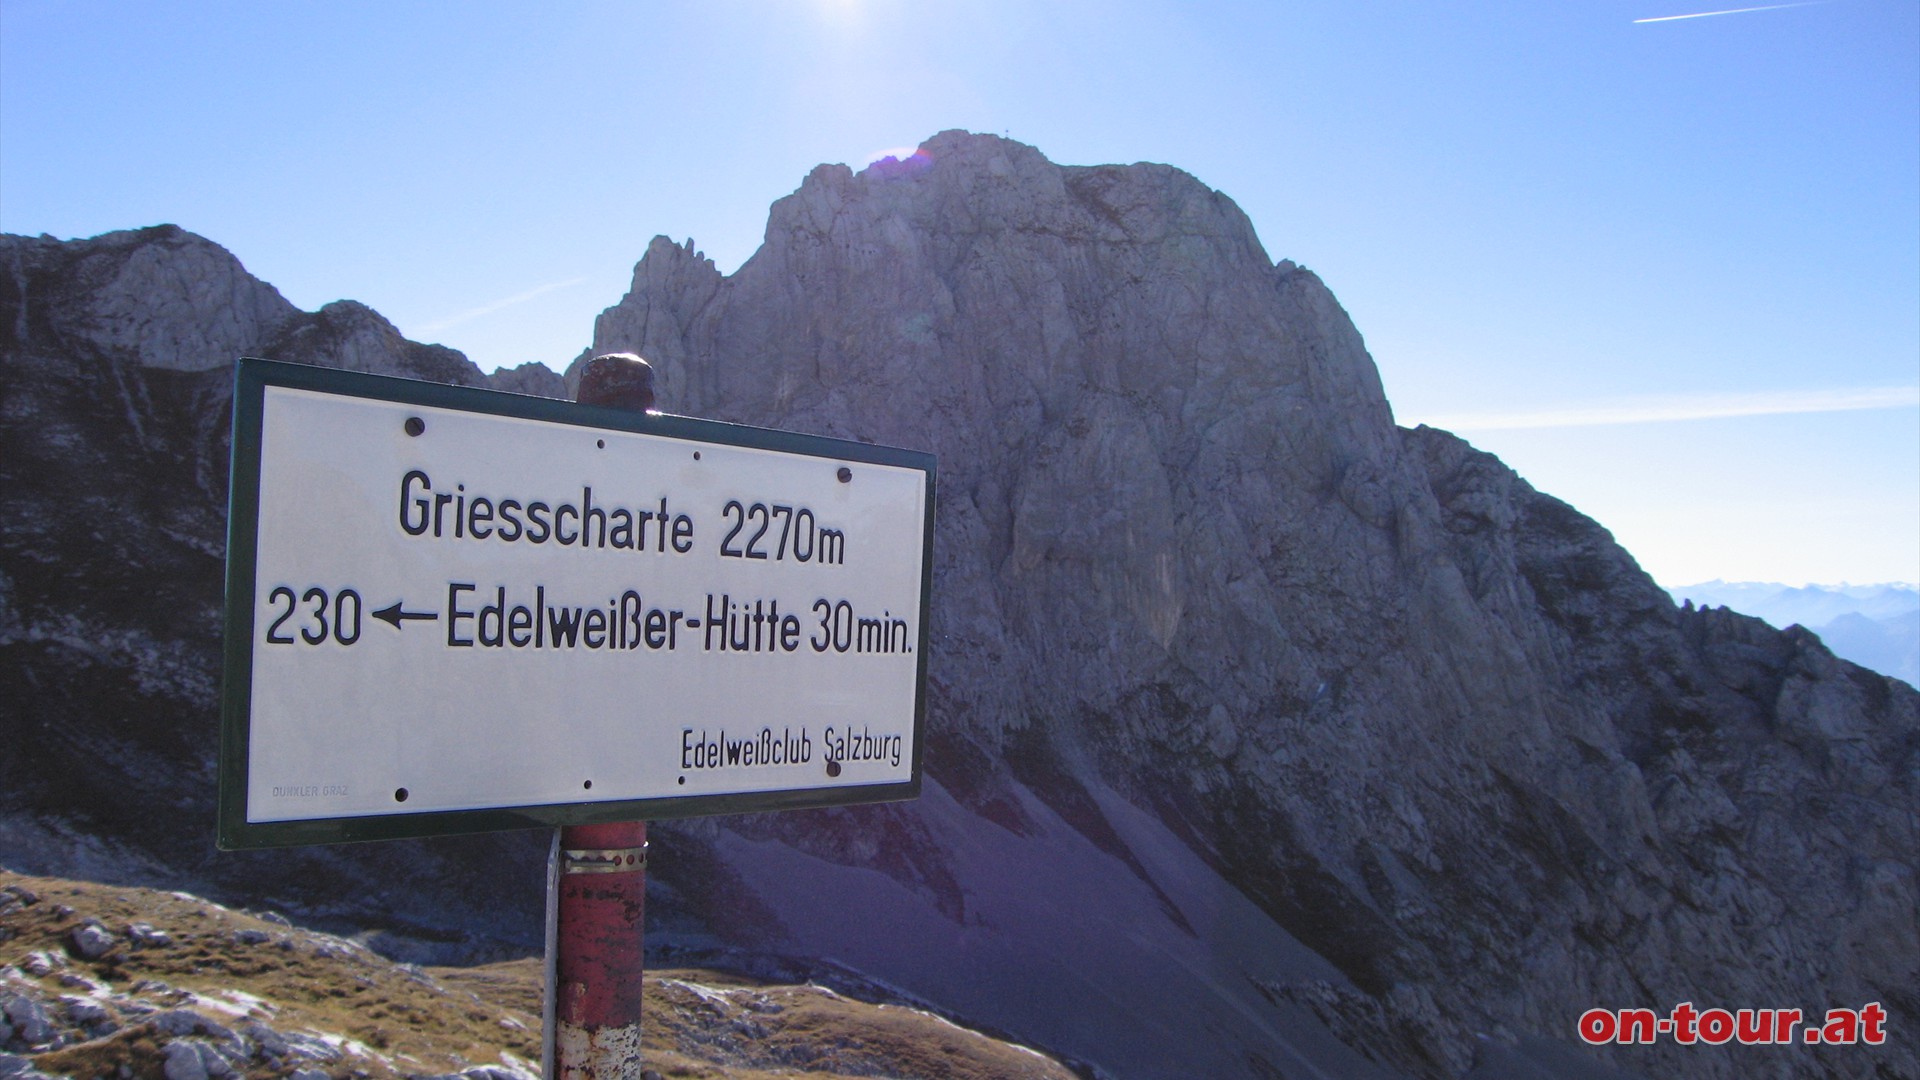 Auf der Giesscharte gehen wir rechts weiter bergauf Richtung Edelweisser-Hütte. Hinter uns beeindrucken die mächtigen Hochthronwände.